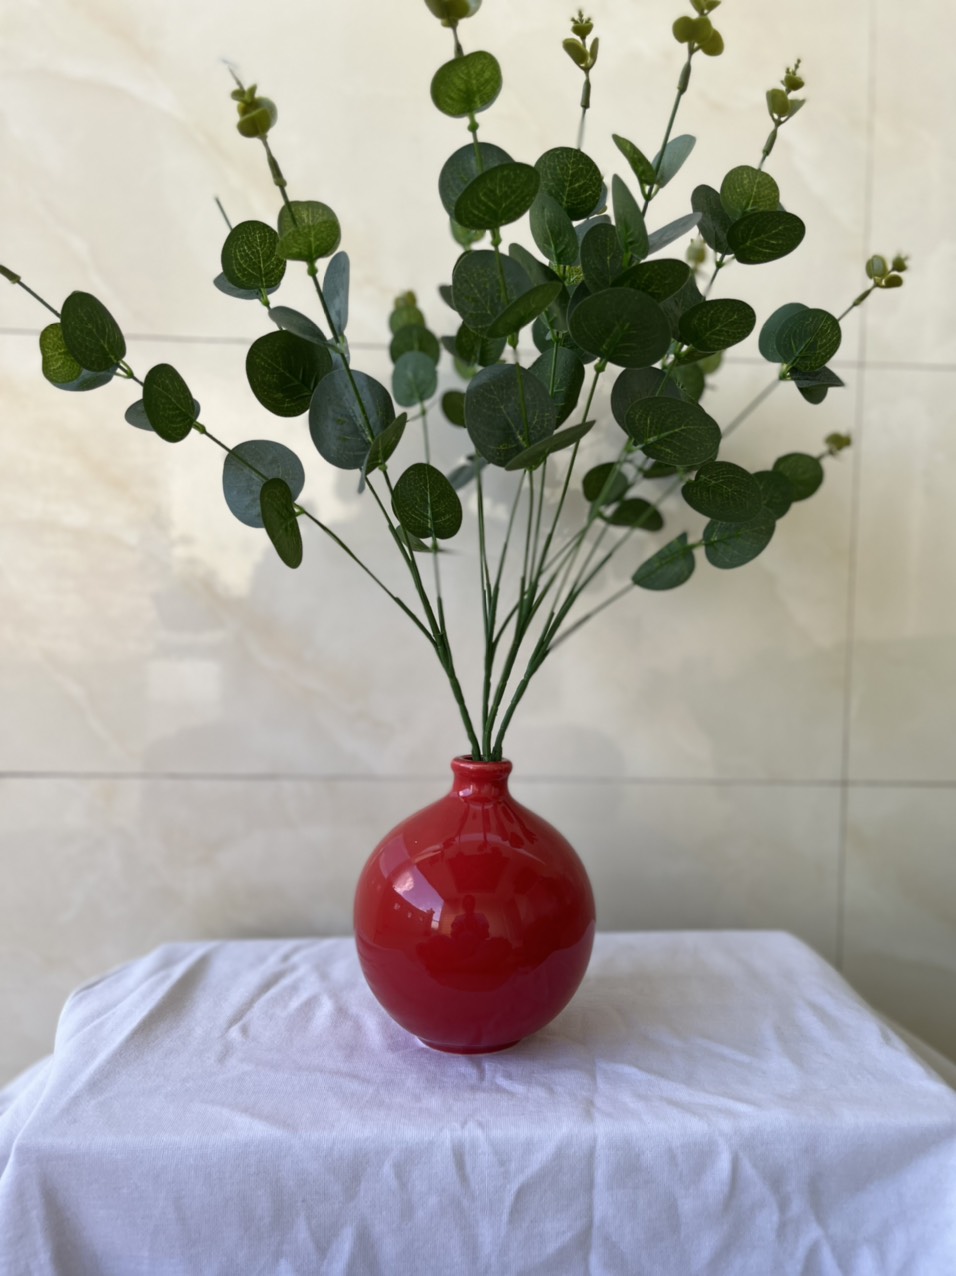 Bình Hoa Dáng Tròn - Đỏ Nổi Bật - Chống Nứt Mẻ - Sang trọng - Hàng Cao Cấp- Cao 15cm